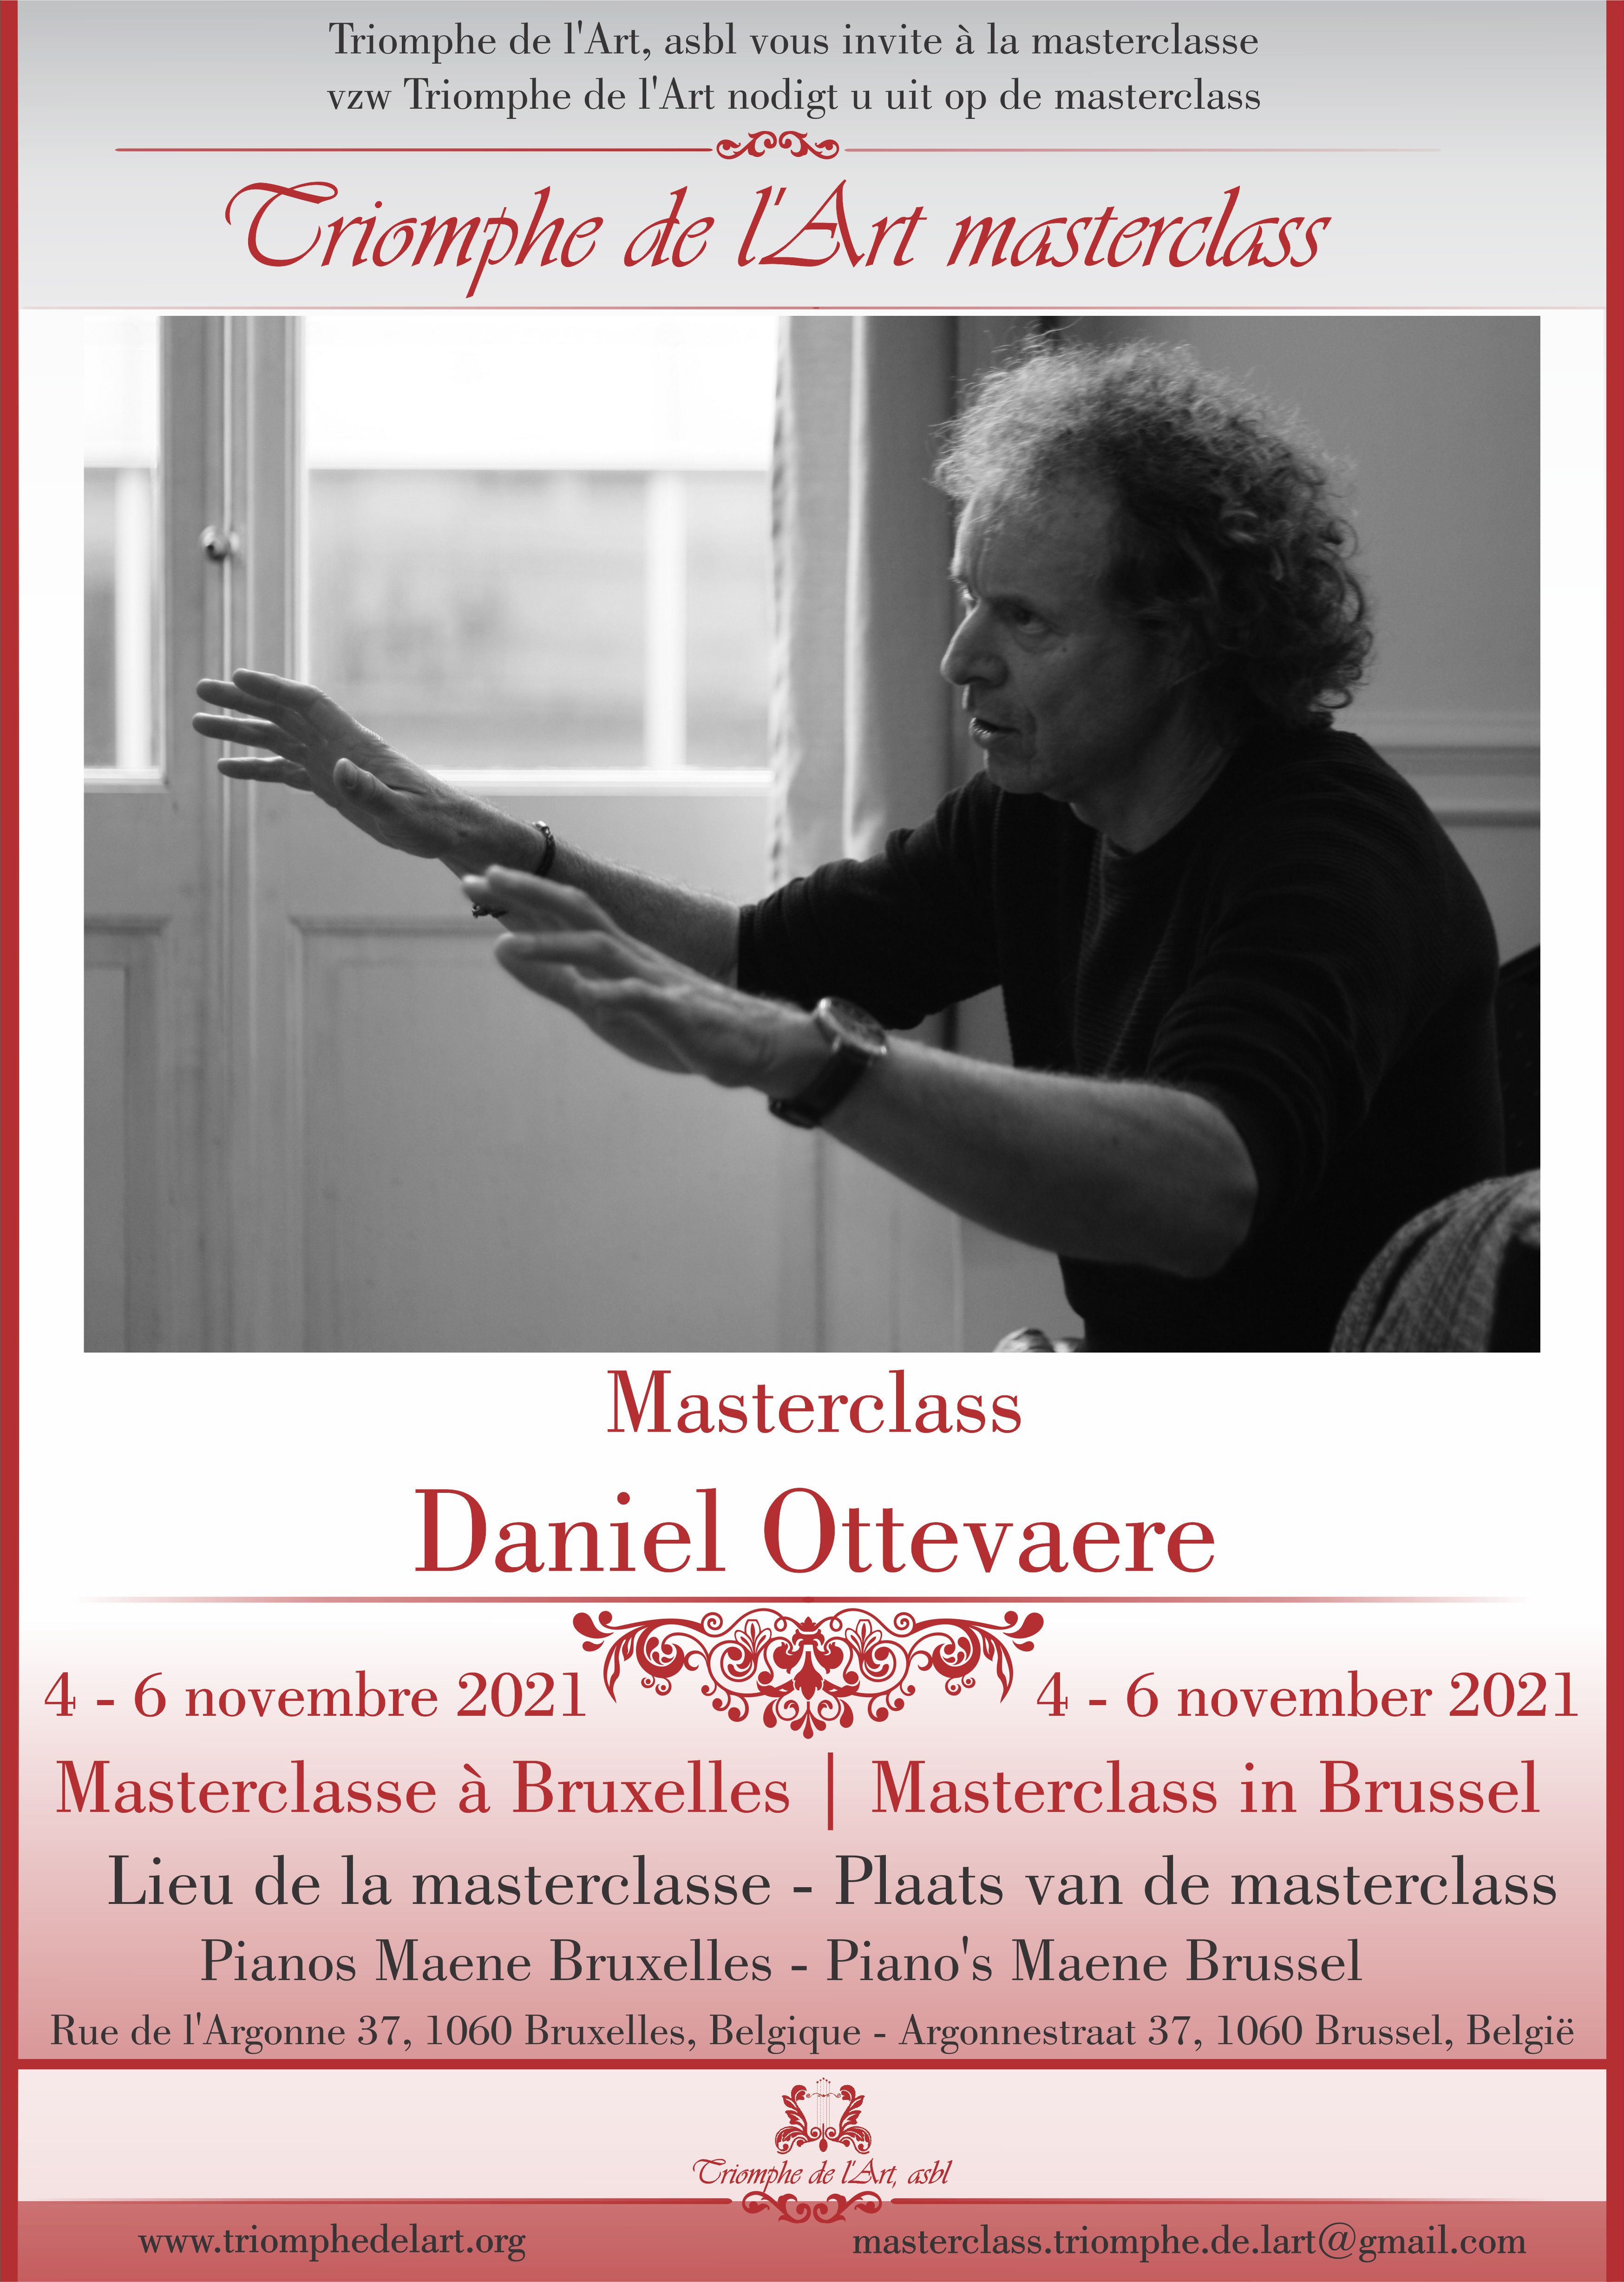 Daniel Ottevaere masterclass november 2021